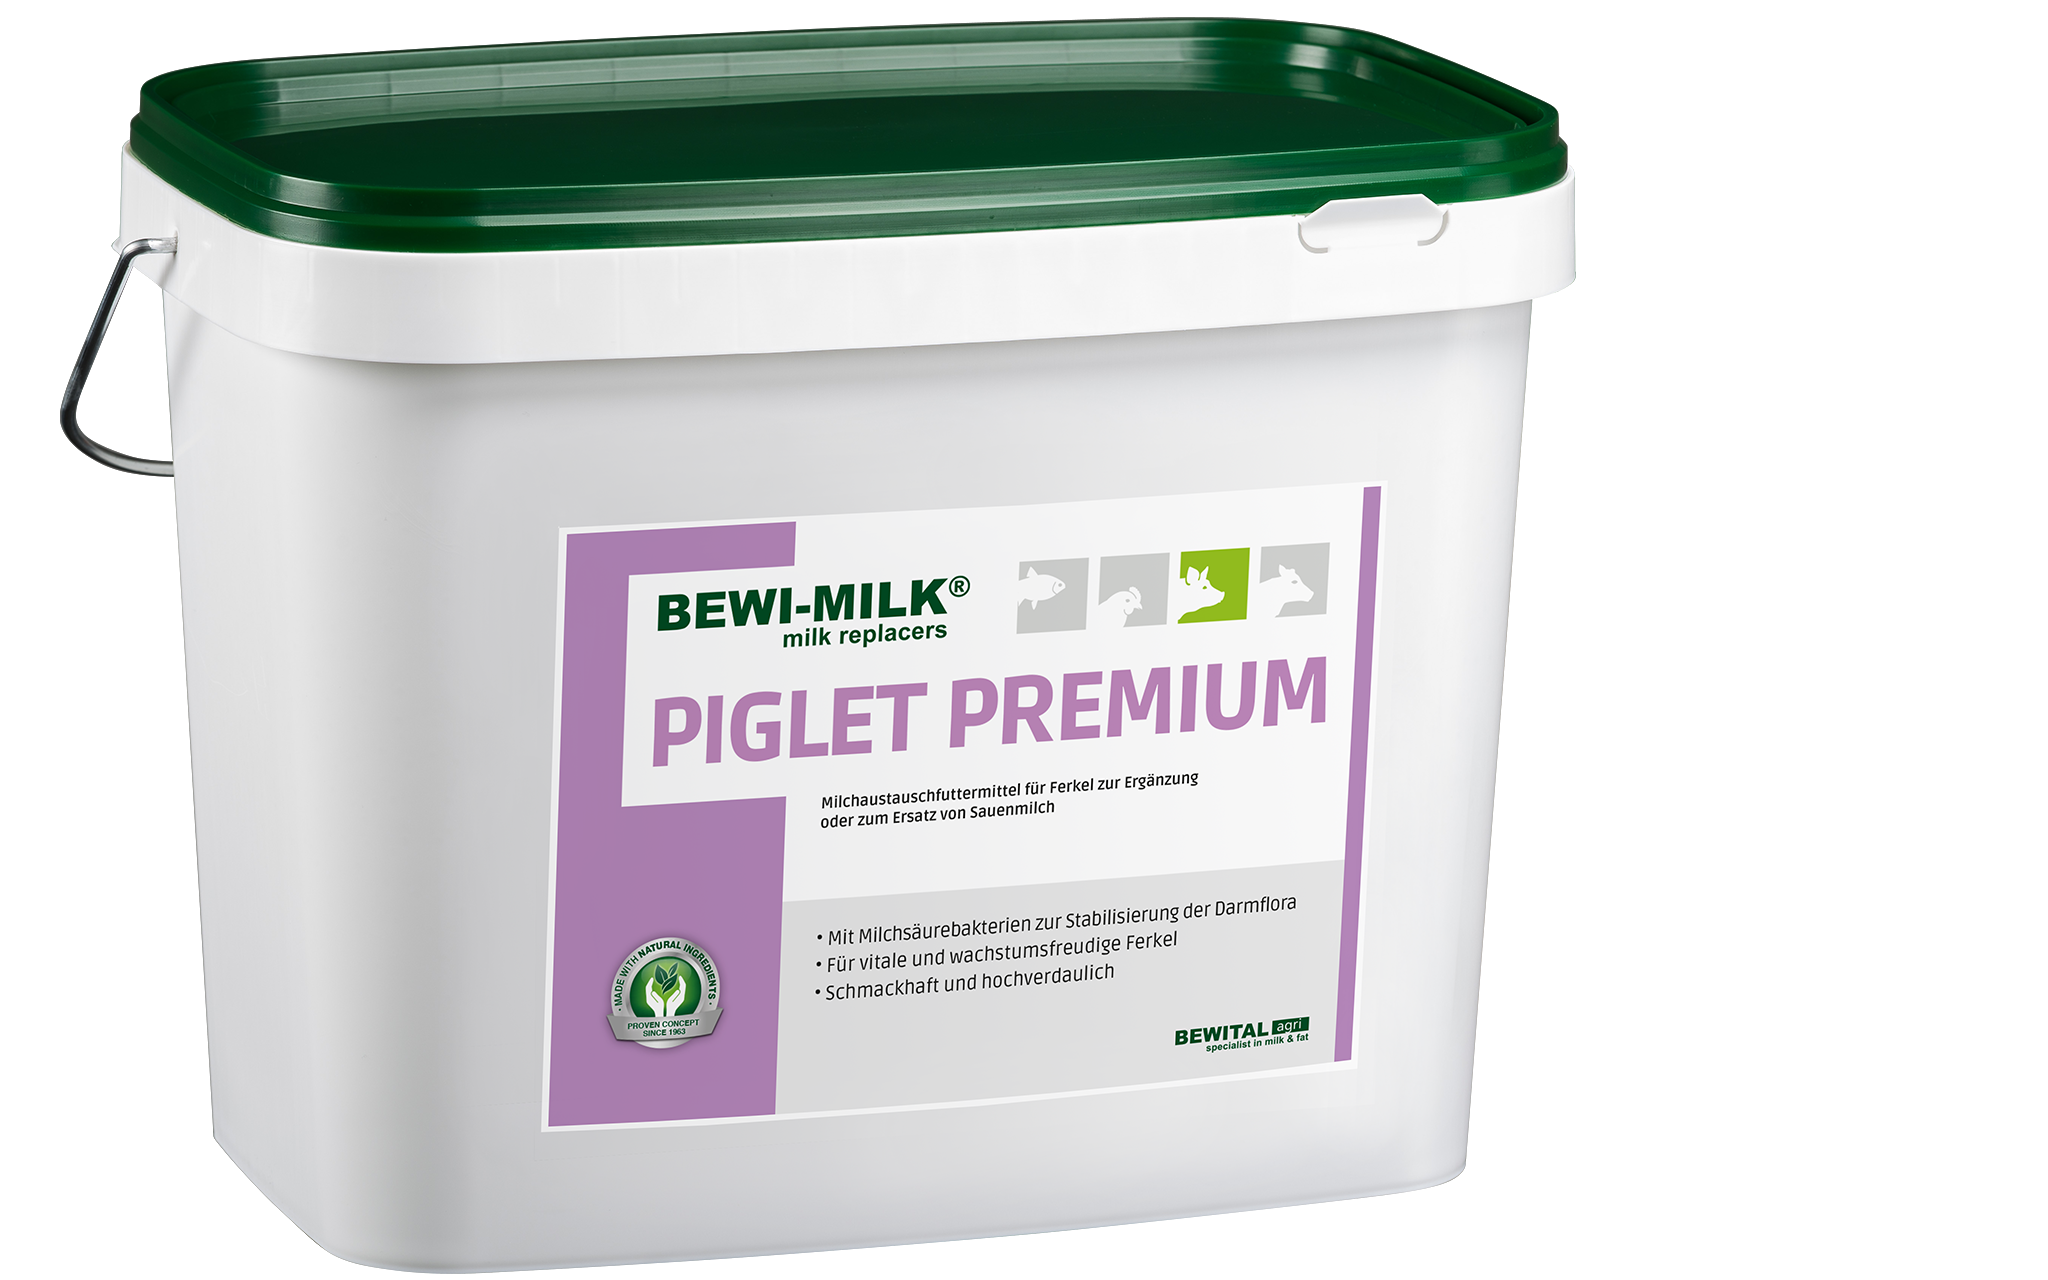 BEWI-MILK® Piglet Premium